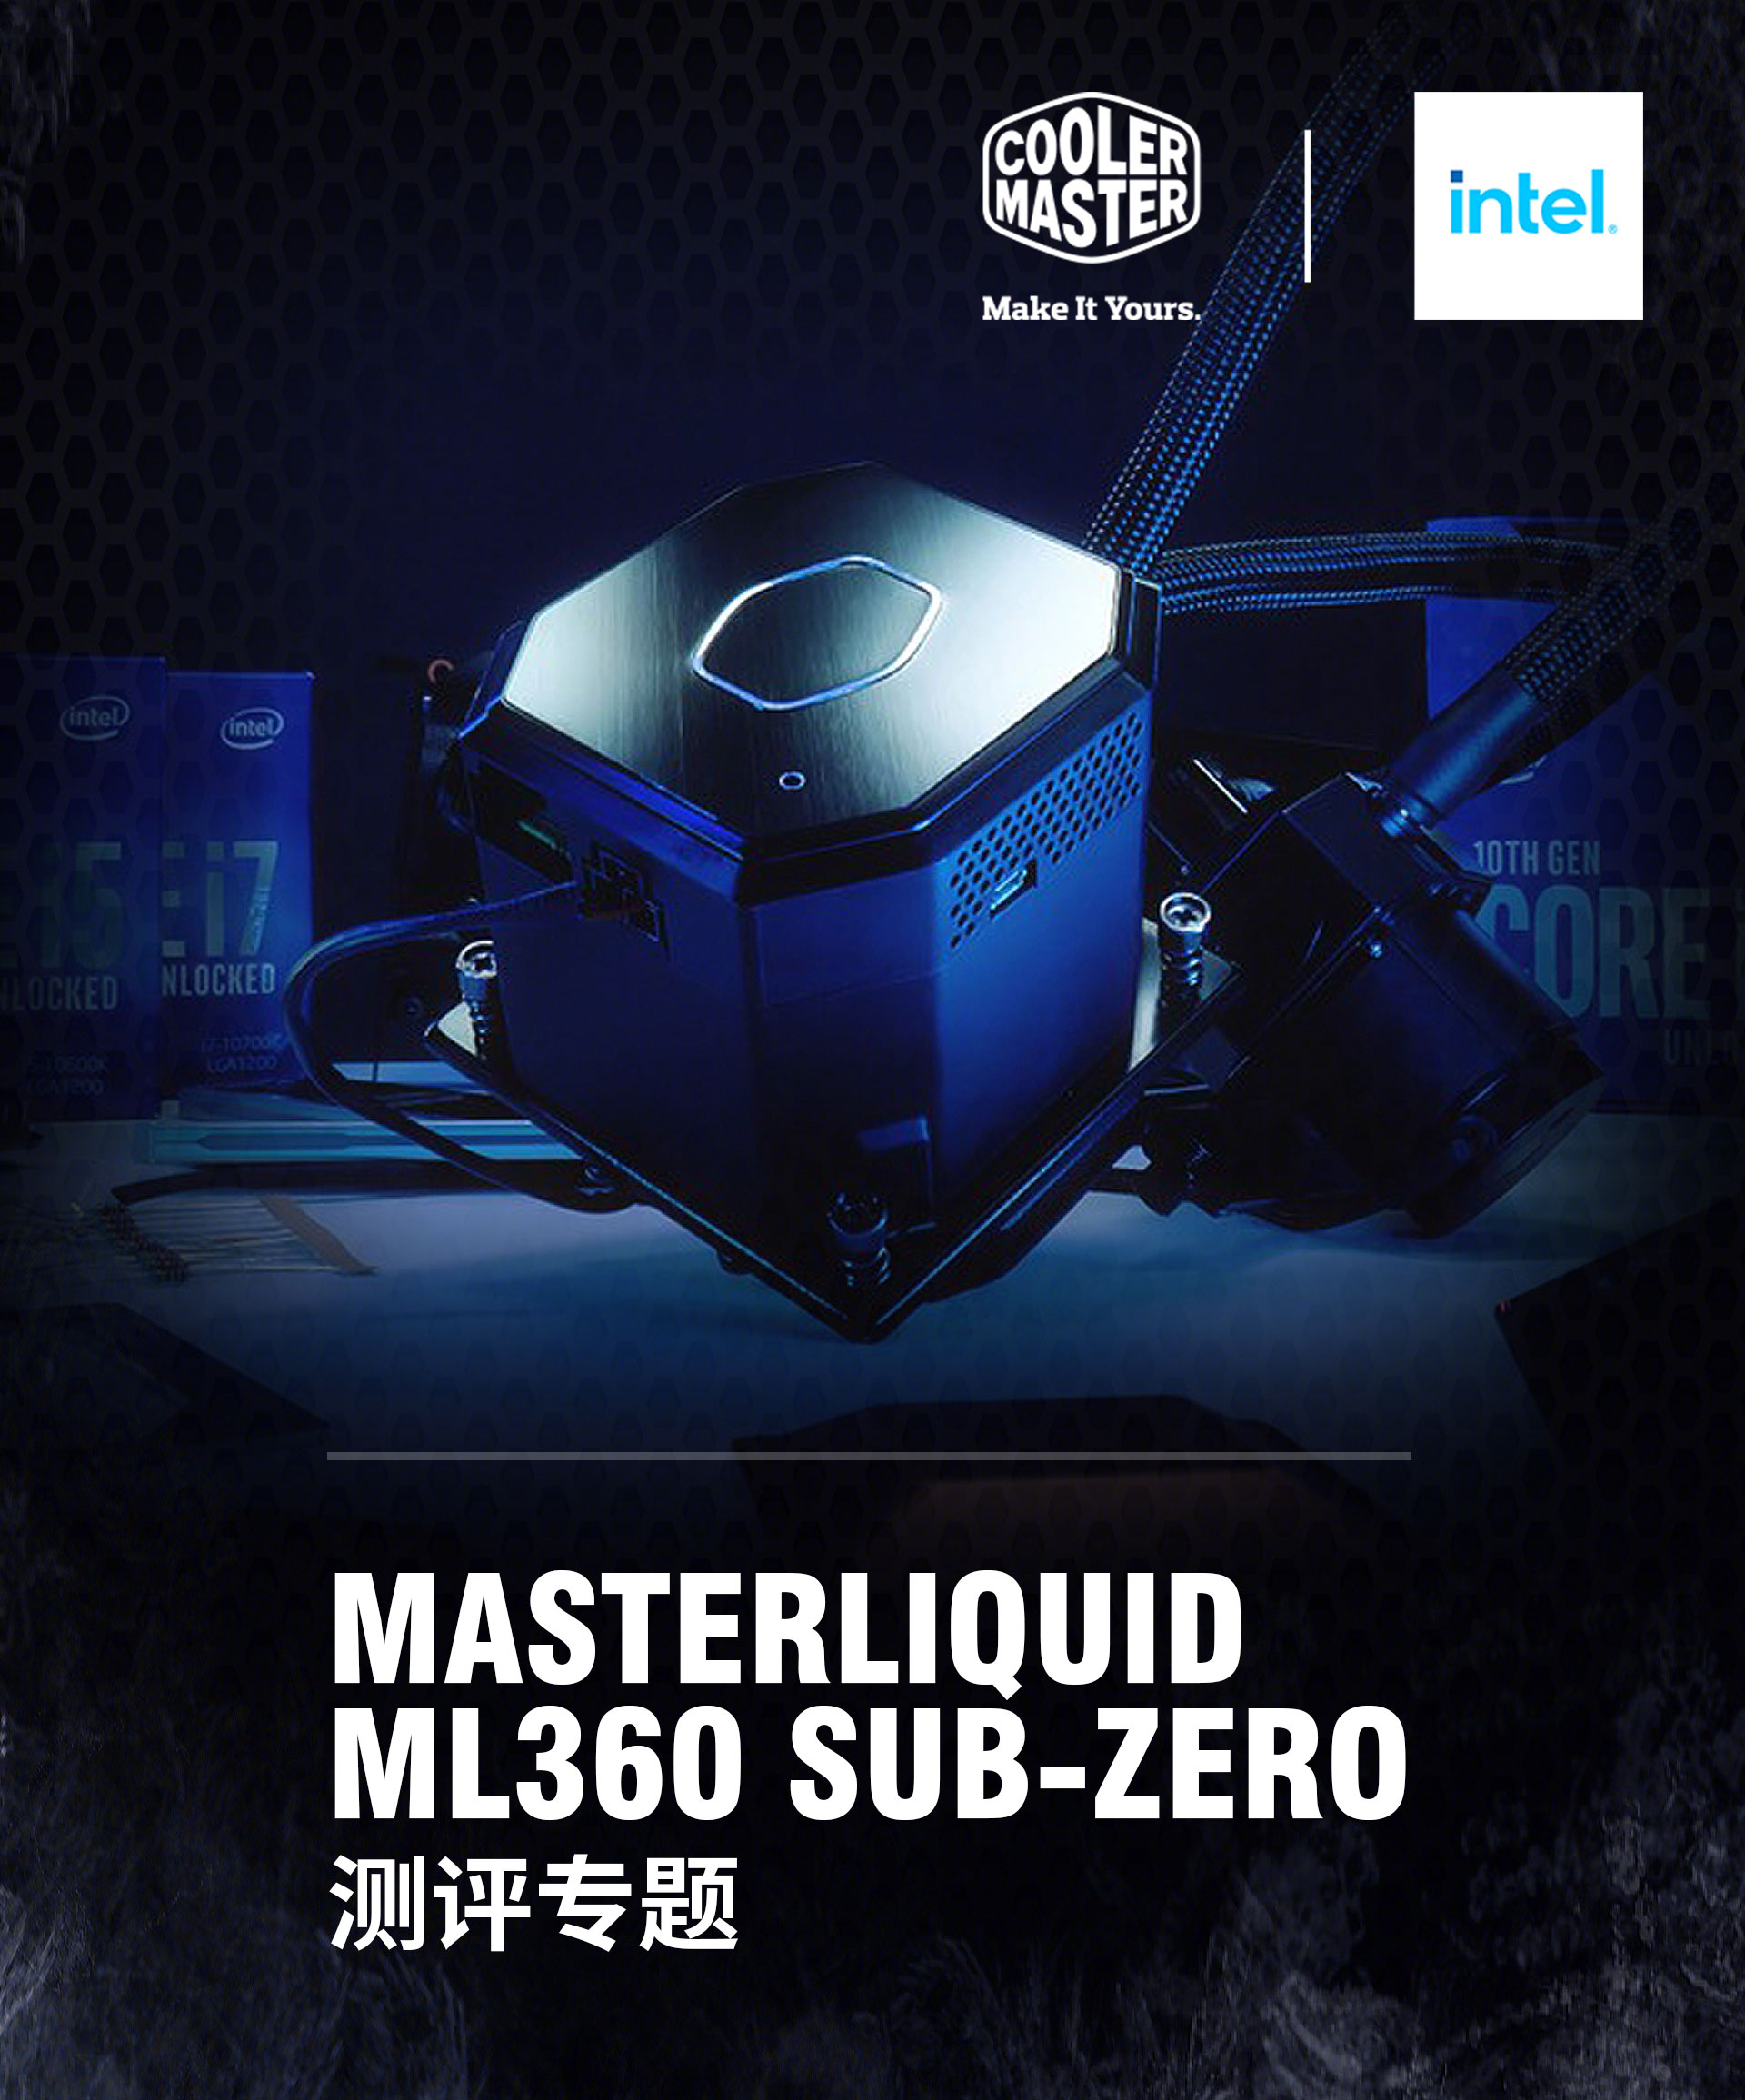 专题: CoolerMaster MasterLiquid ML360 SUB-ZERO